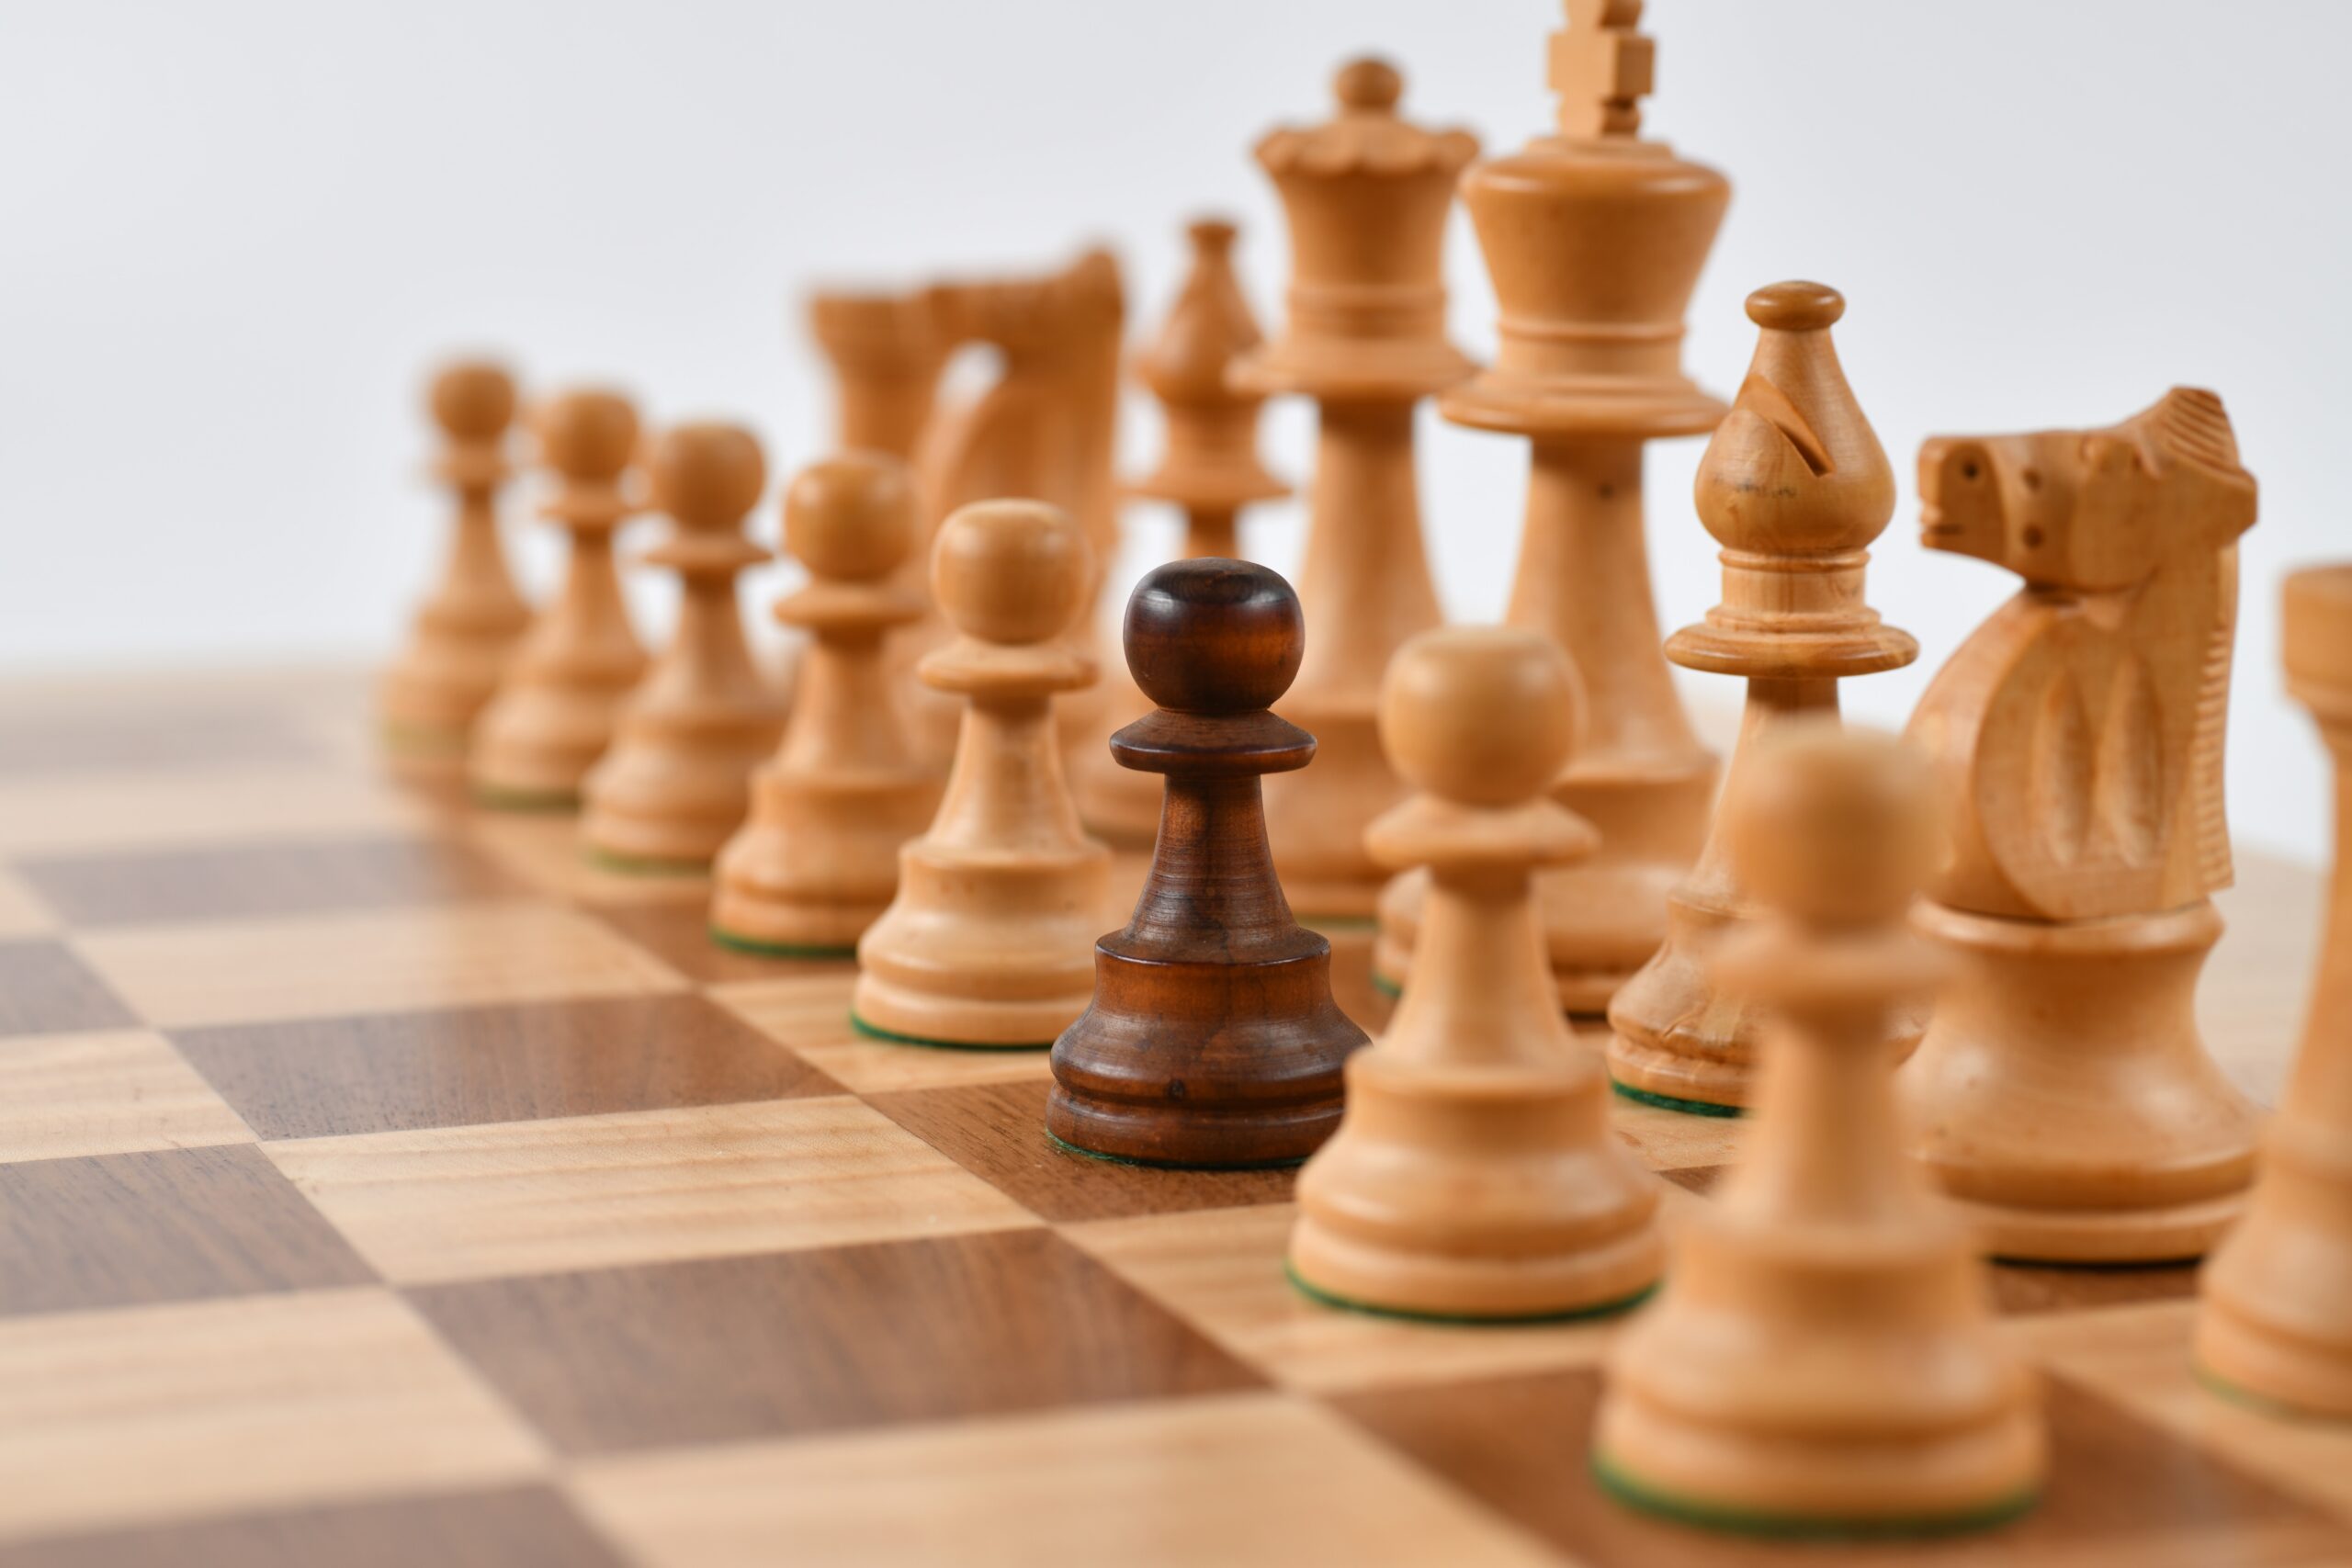  purpose of a fianchetto in chess